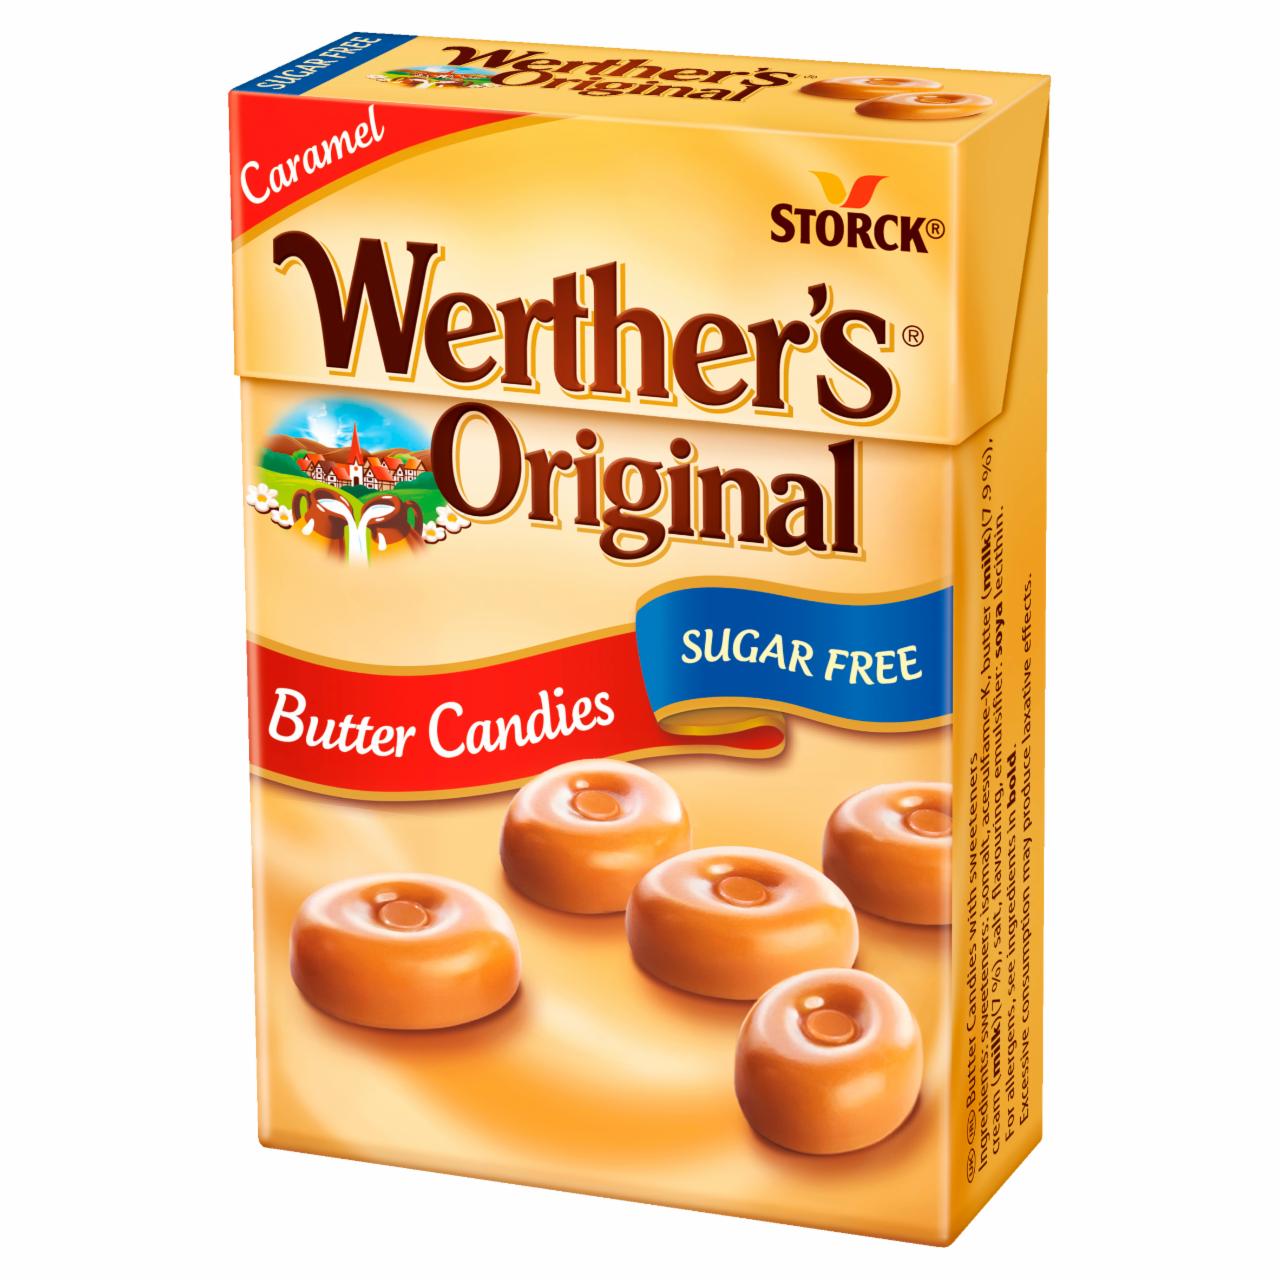 Képek - Werther's Original cukormentes tejszínes töltetlen keménycukorka édesítőszerekkel 42 g